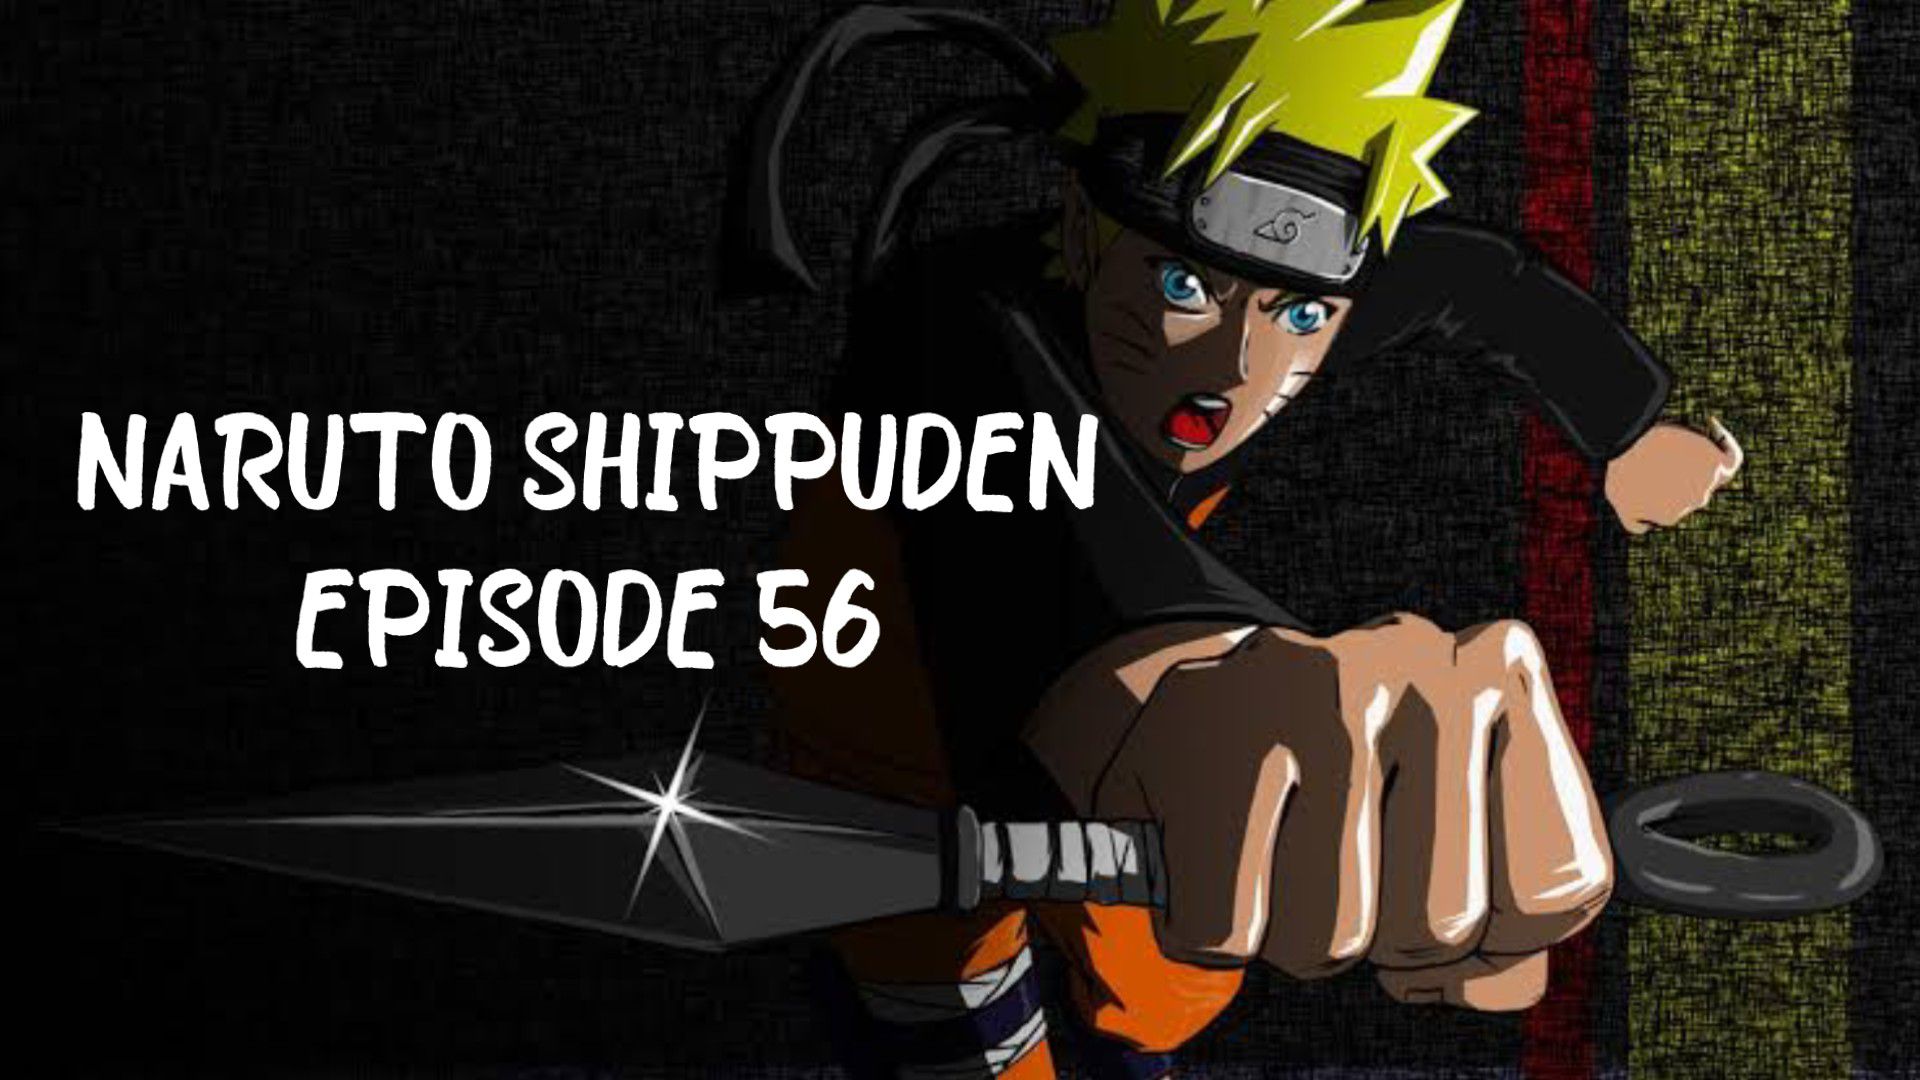 Naruto (dublado) Ep 56, Naruto (dublado) Ep 56, By Anime fãs 01